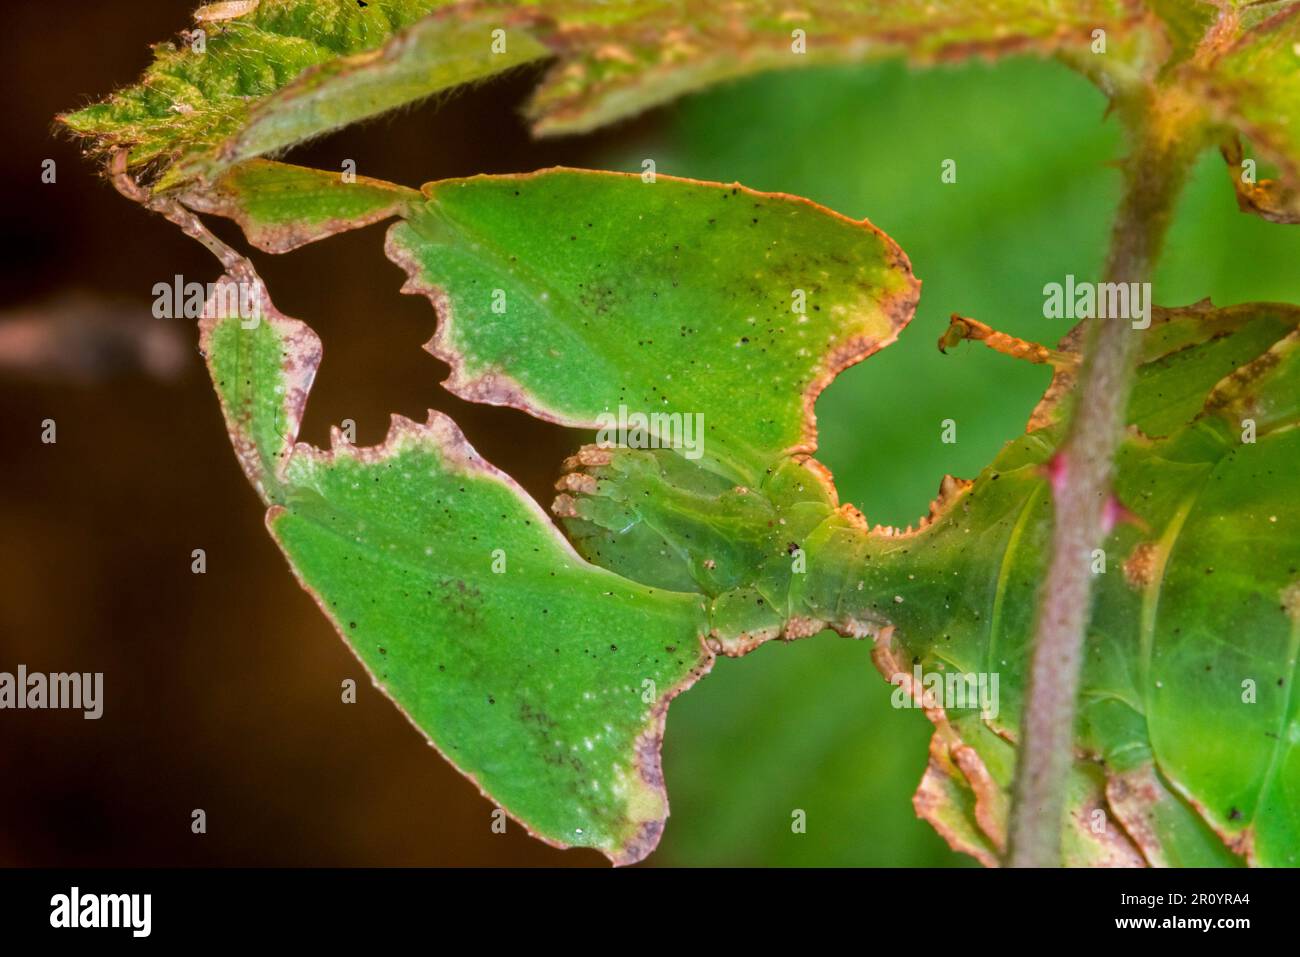 Primo piano della specie Pulchriphyllium, insetto foglia / foglia a piedi nativo delle foreste tropicali dell'Asia, notevolmente mimici / mimesi foglia mimetica mimetica mimetica foglia mimetica Foto Stock